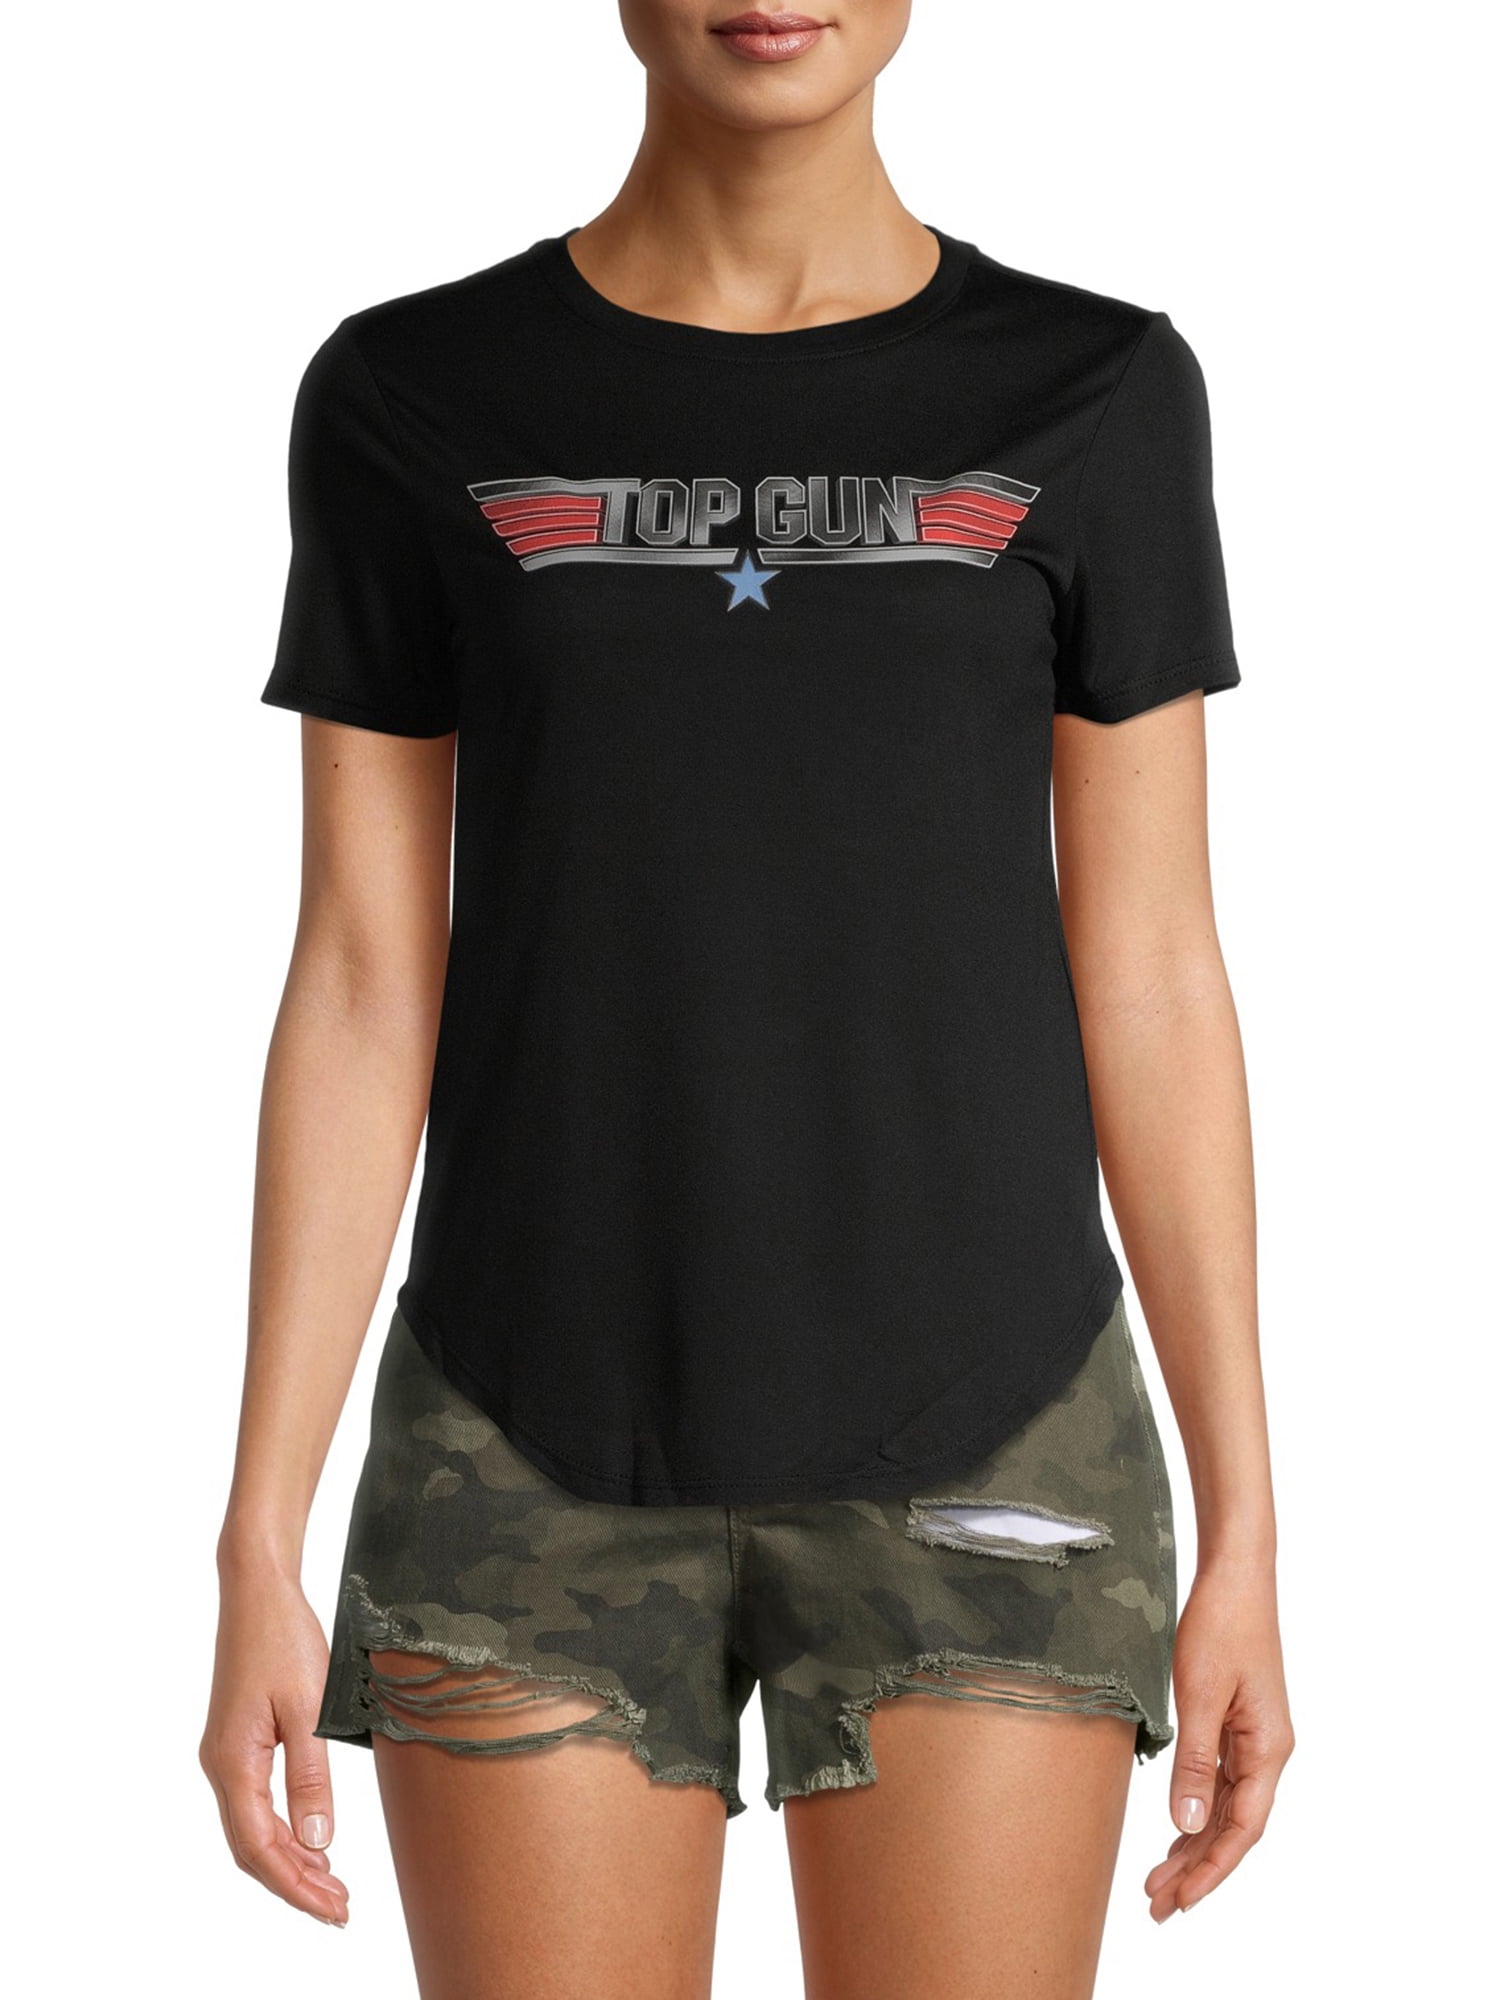 Top Gun Juniors' Scoop Neck T-Shirt 